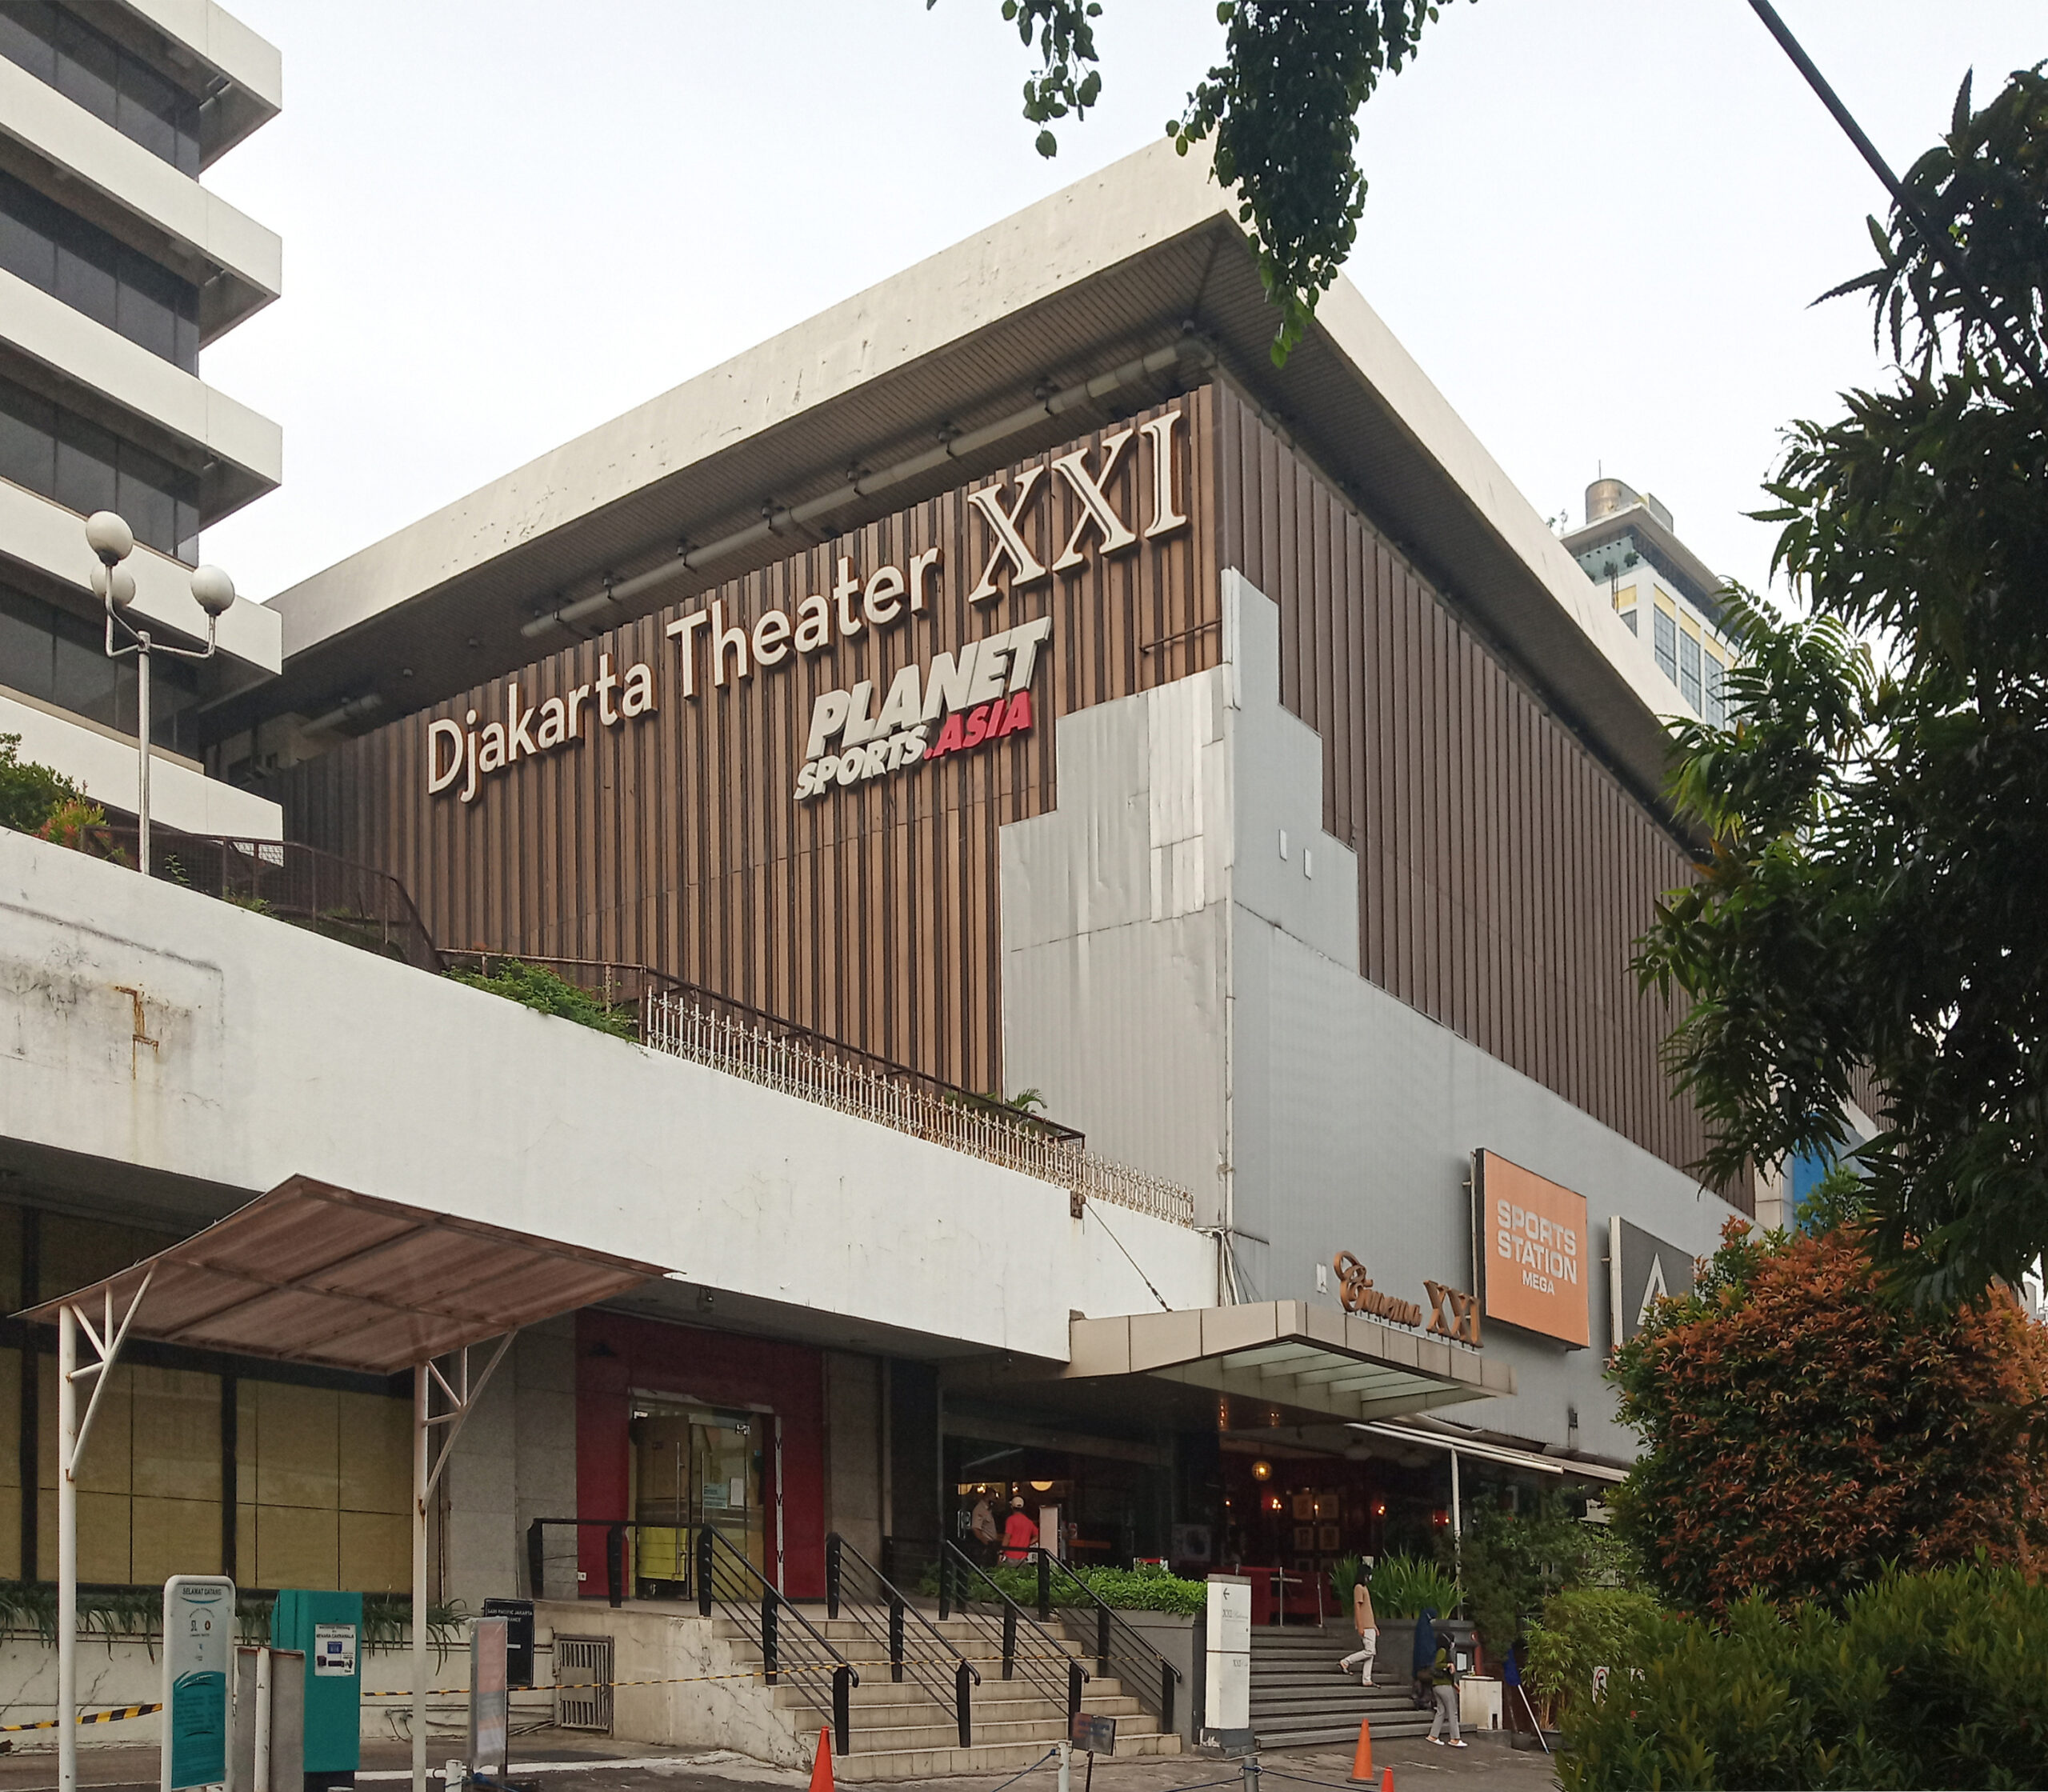 Djakarta Theater